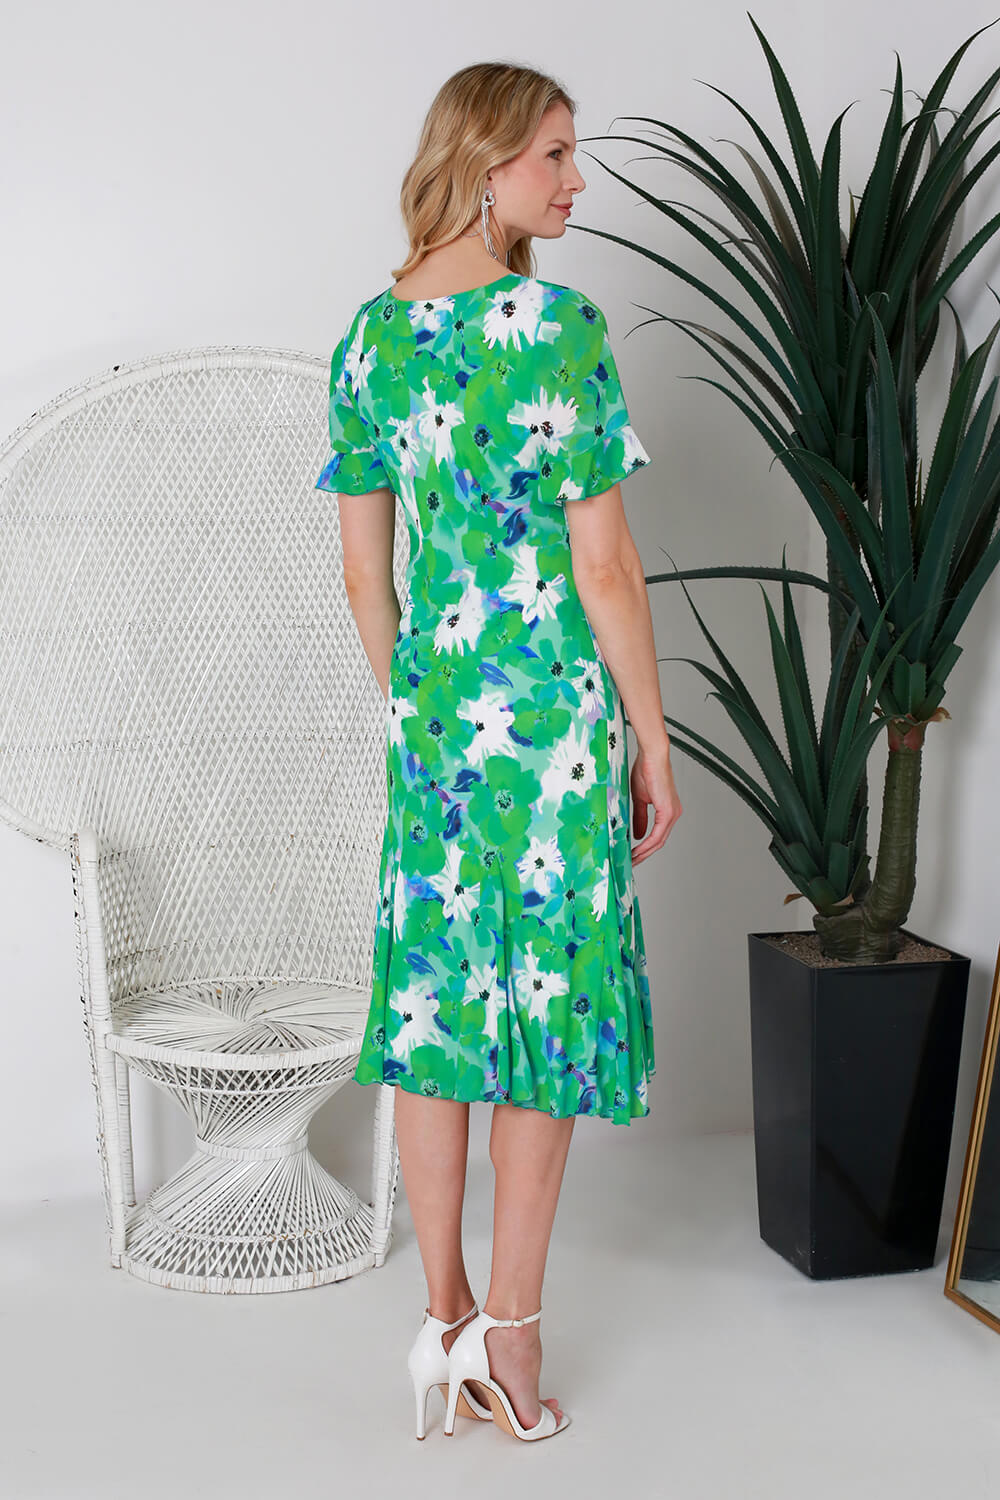 Mint Julianna Floral Print Godet Dress, Image 3 of 4